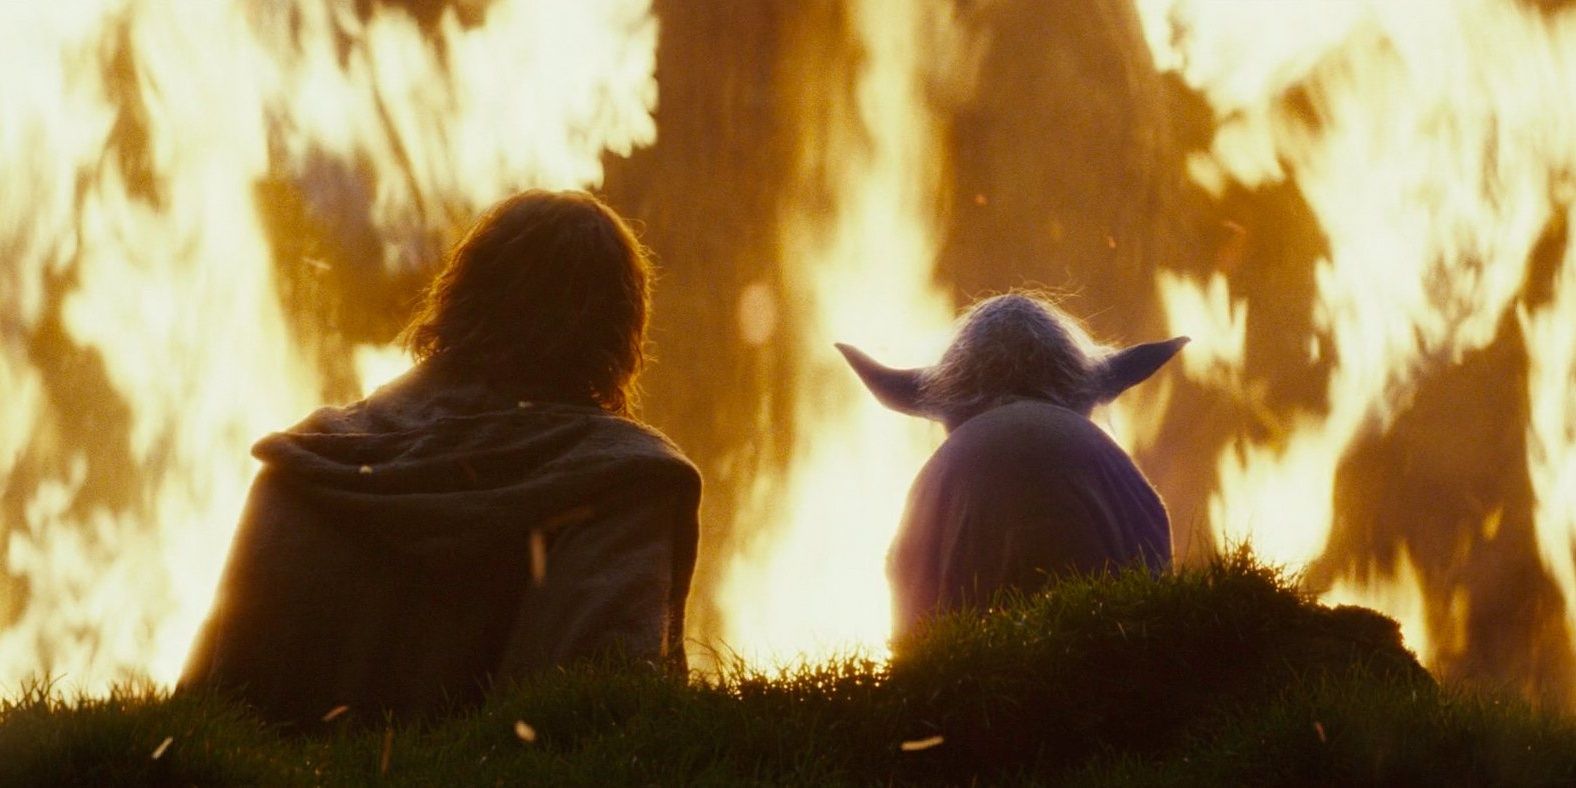 Yoda y Luke observan cómo se quema el árbol de Ahch-To en The Last Jedi.